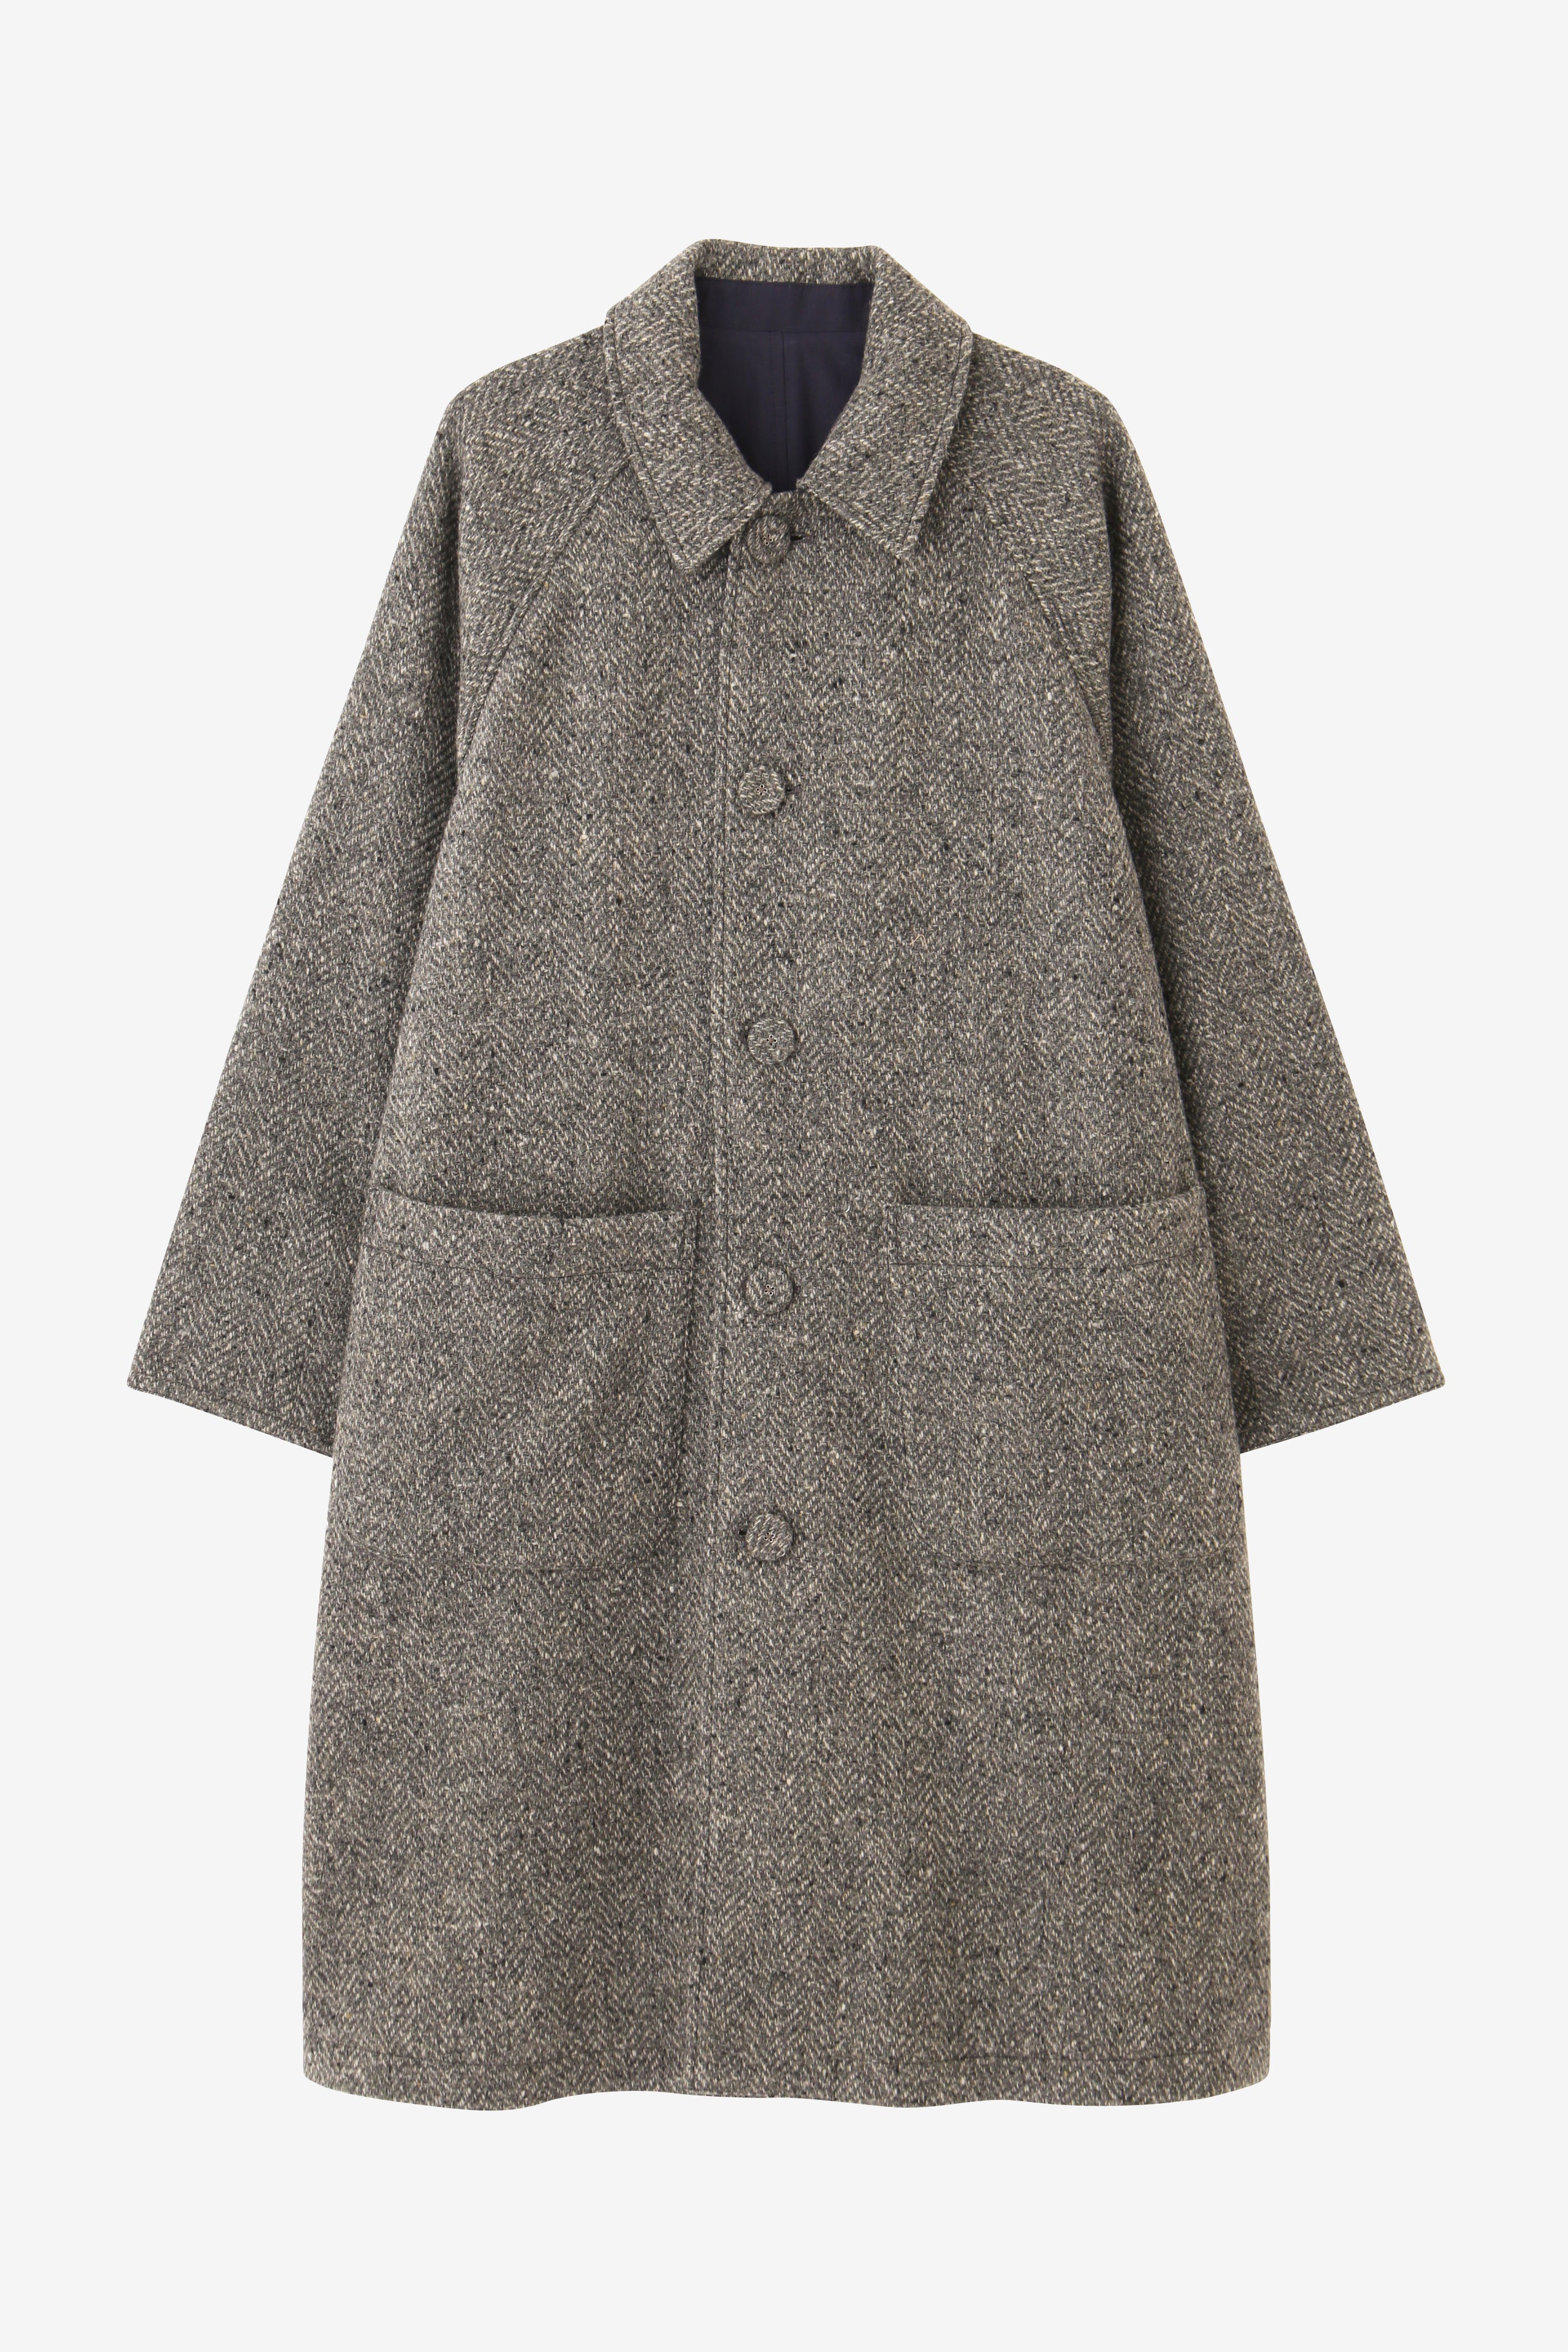 ぐりdesign coat ウールコート 110407 グレー ヘリボーン